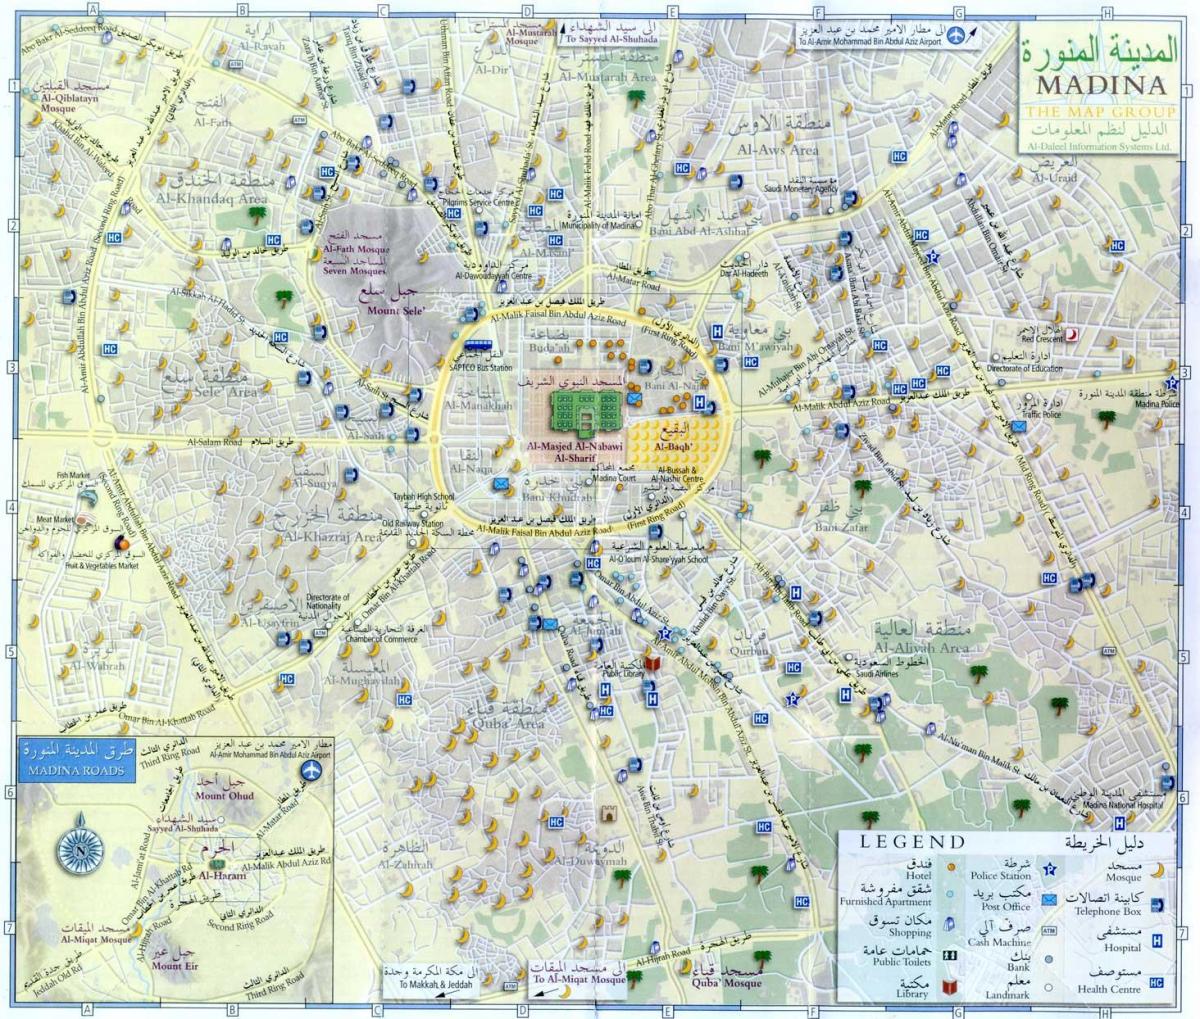 Mapa do centro da cidade de Meca (Makkah)